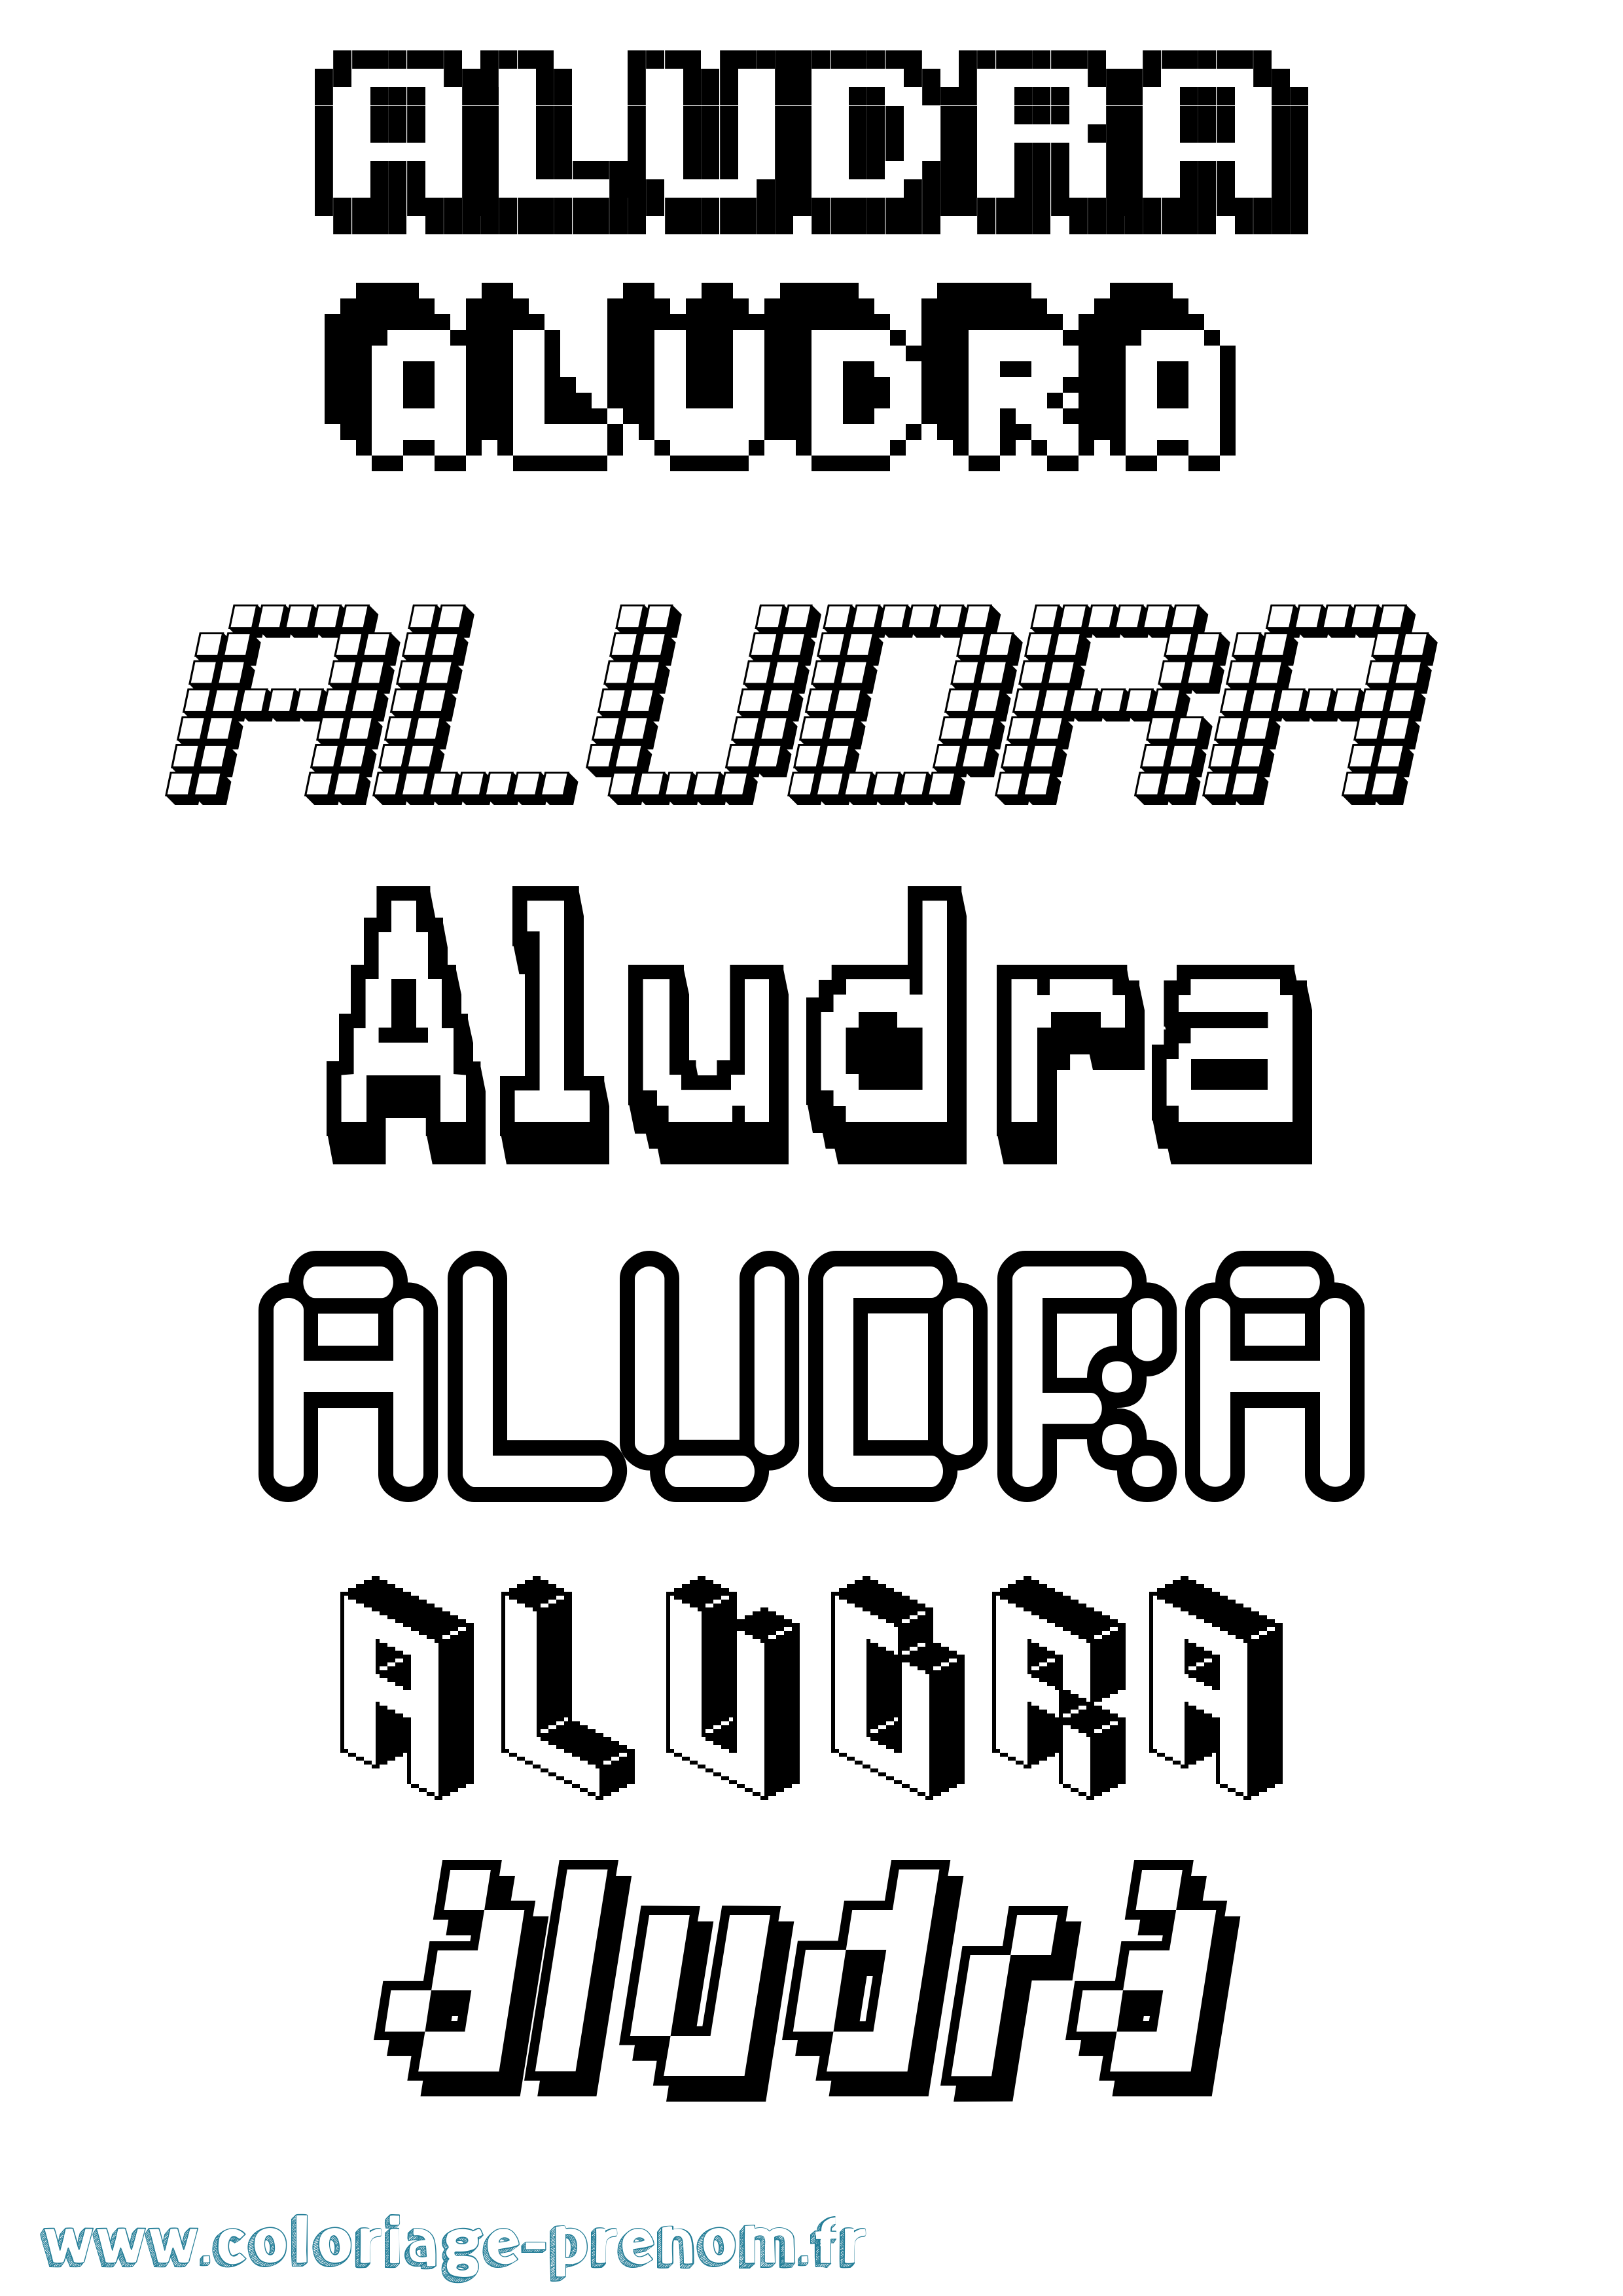 Coloriage prénom Aludra Pixel